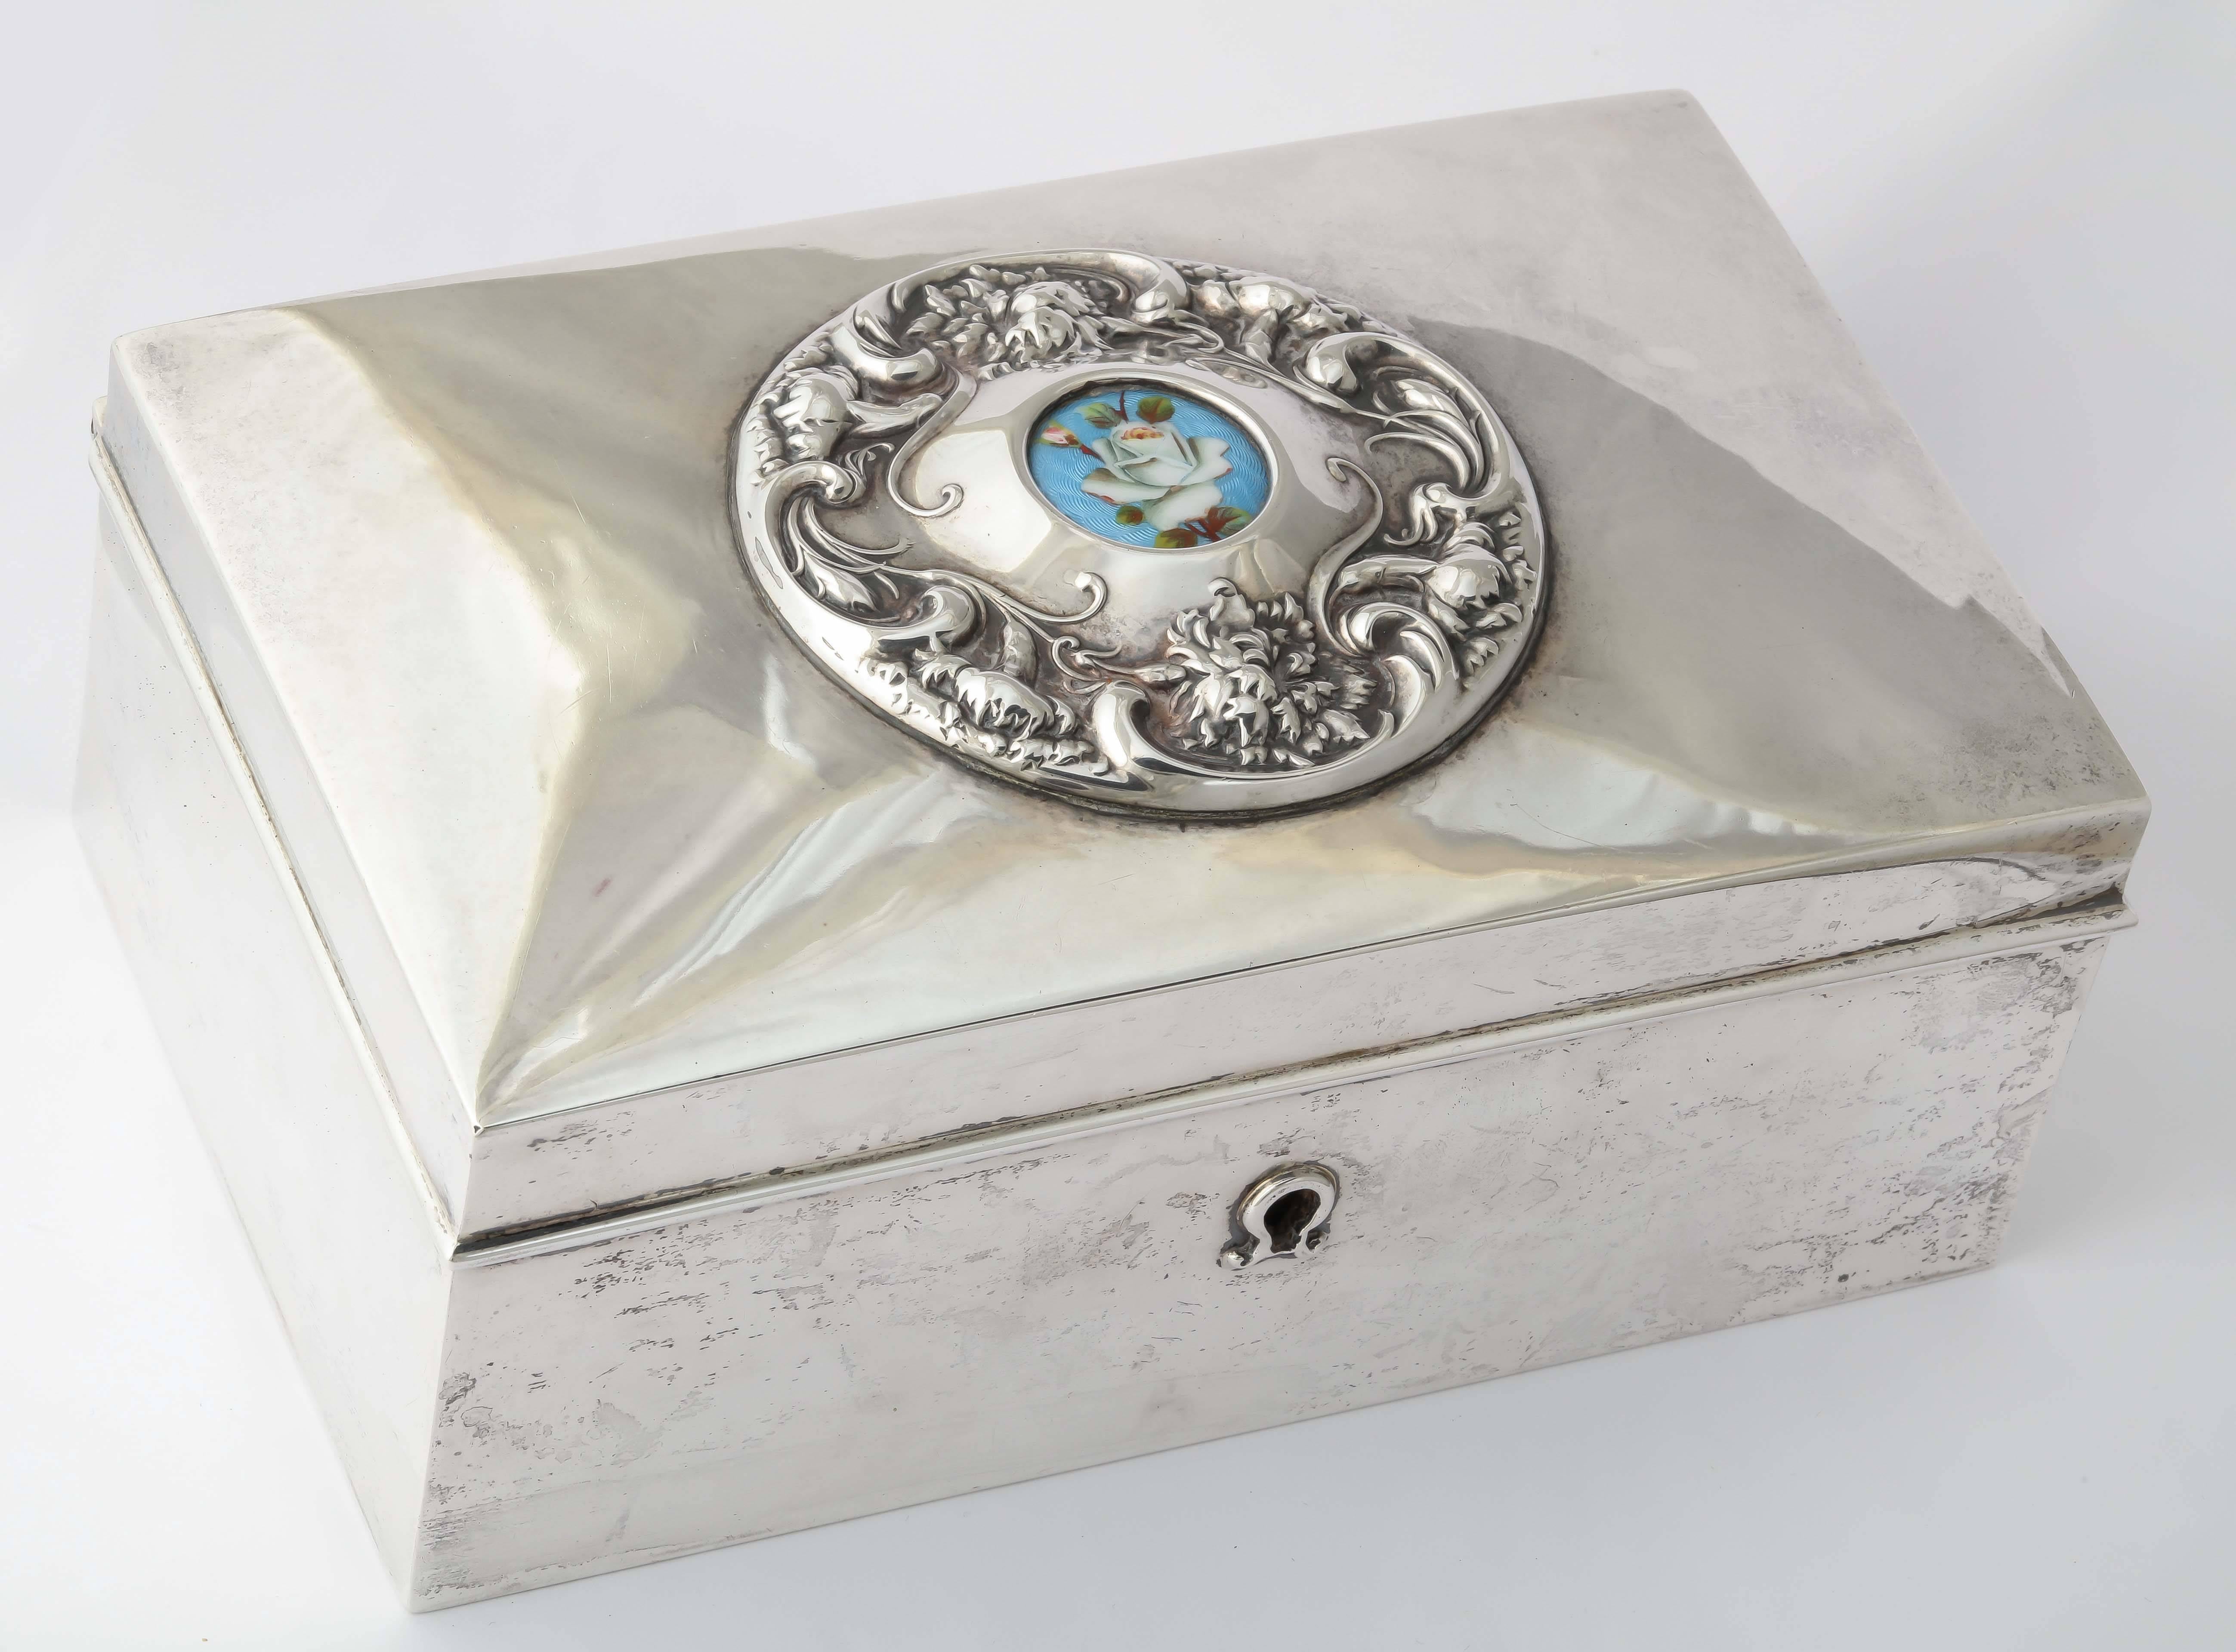 Ein schöner rechteckiger Liebesbriefkasten aus schwerem Silber mit einem Schlüsselloch. Der Deckel ist mit einem kreisförmigen, erhabenen Blattmotiv verziert, das eine emaillierte weiße Rose auf blauem, guillochiertem Grund einschließt. 

Von